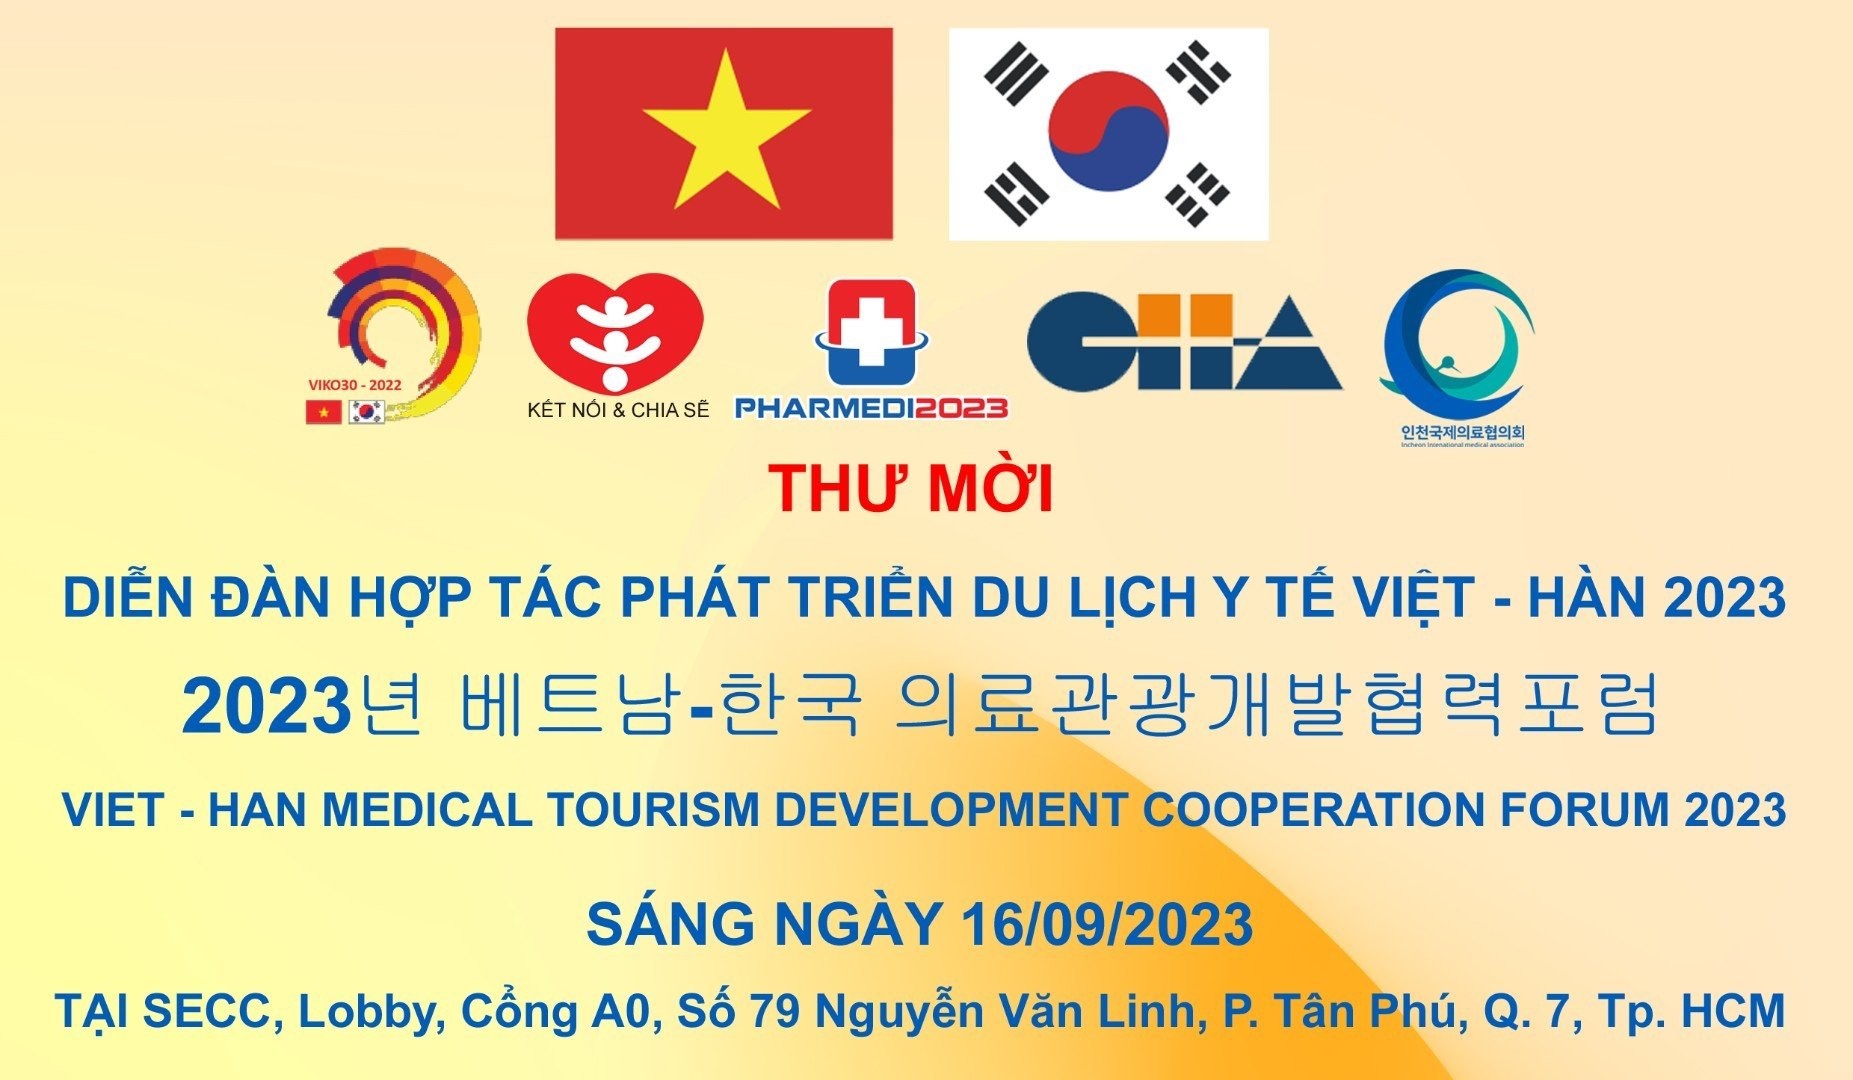 Sắp diễn ra Diễn dàn hợp tác phát triển du lịch Việt Nam – Hàn Quốc 2023